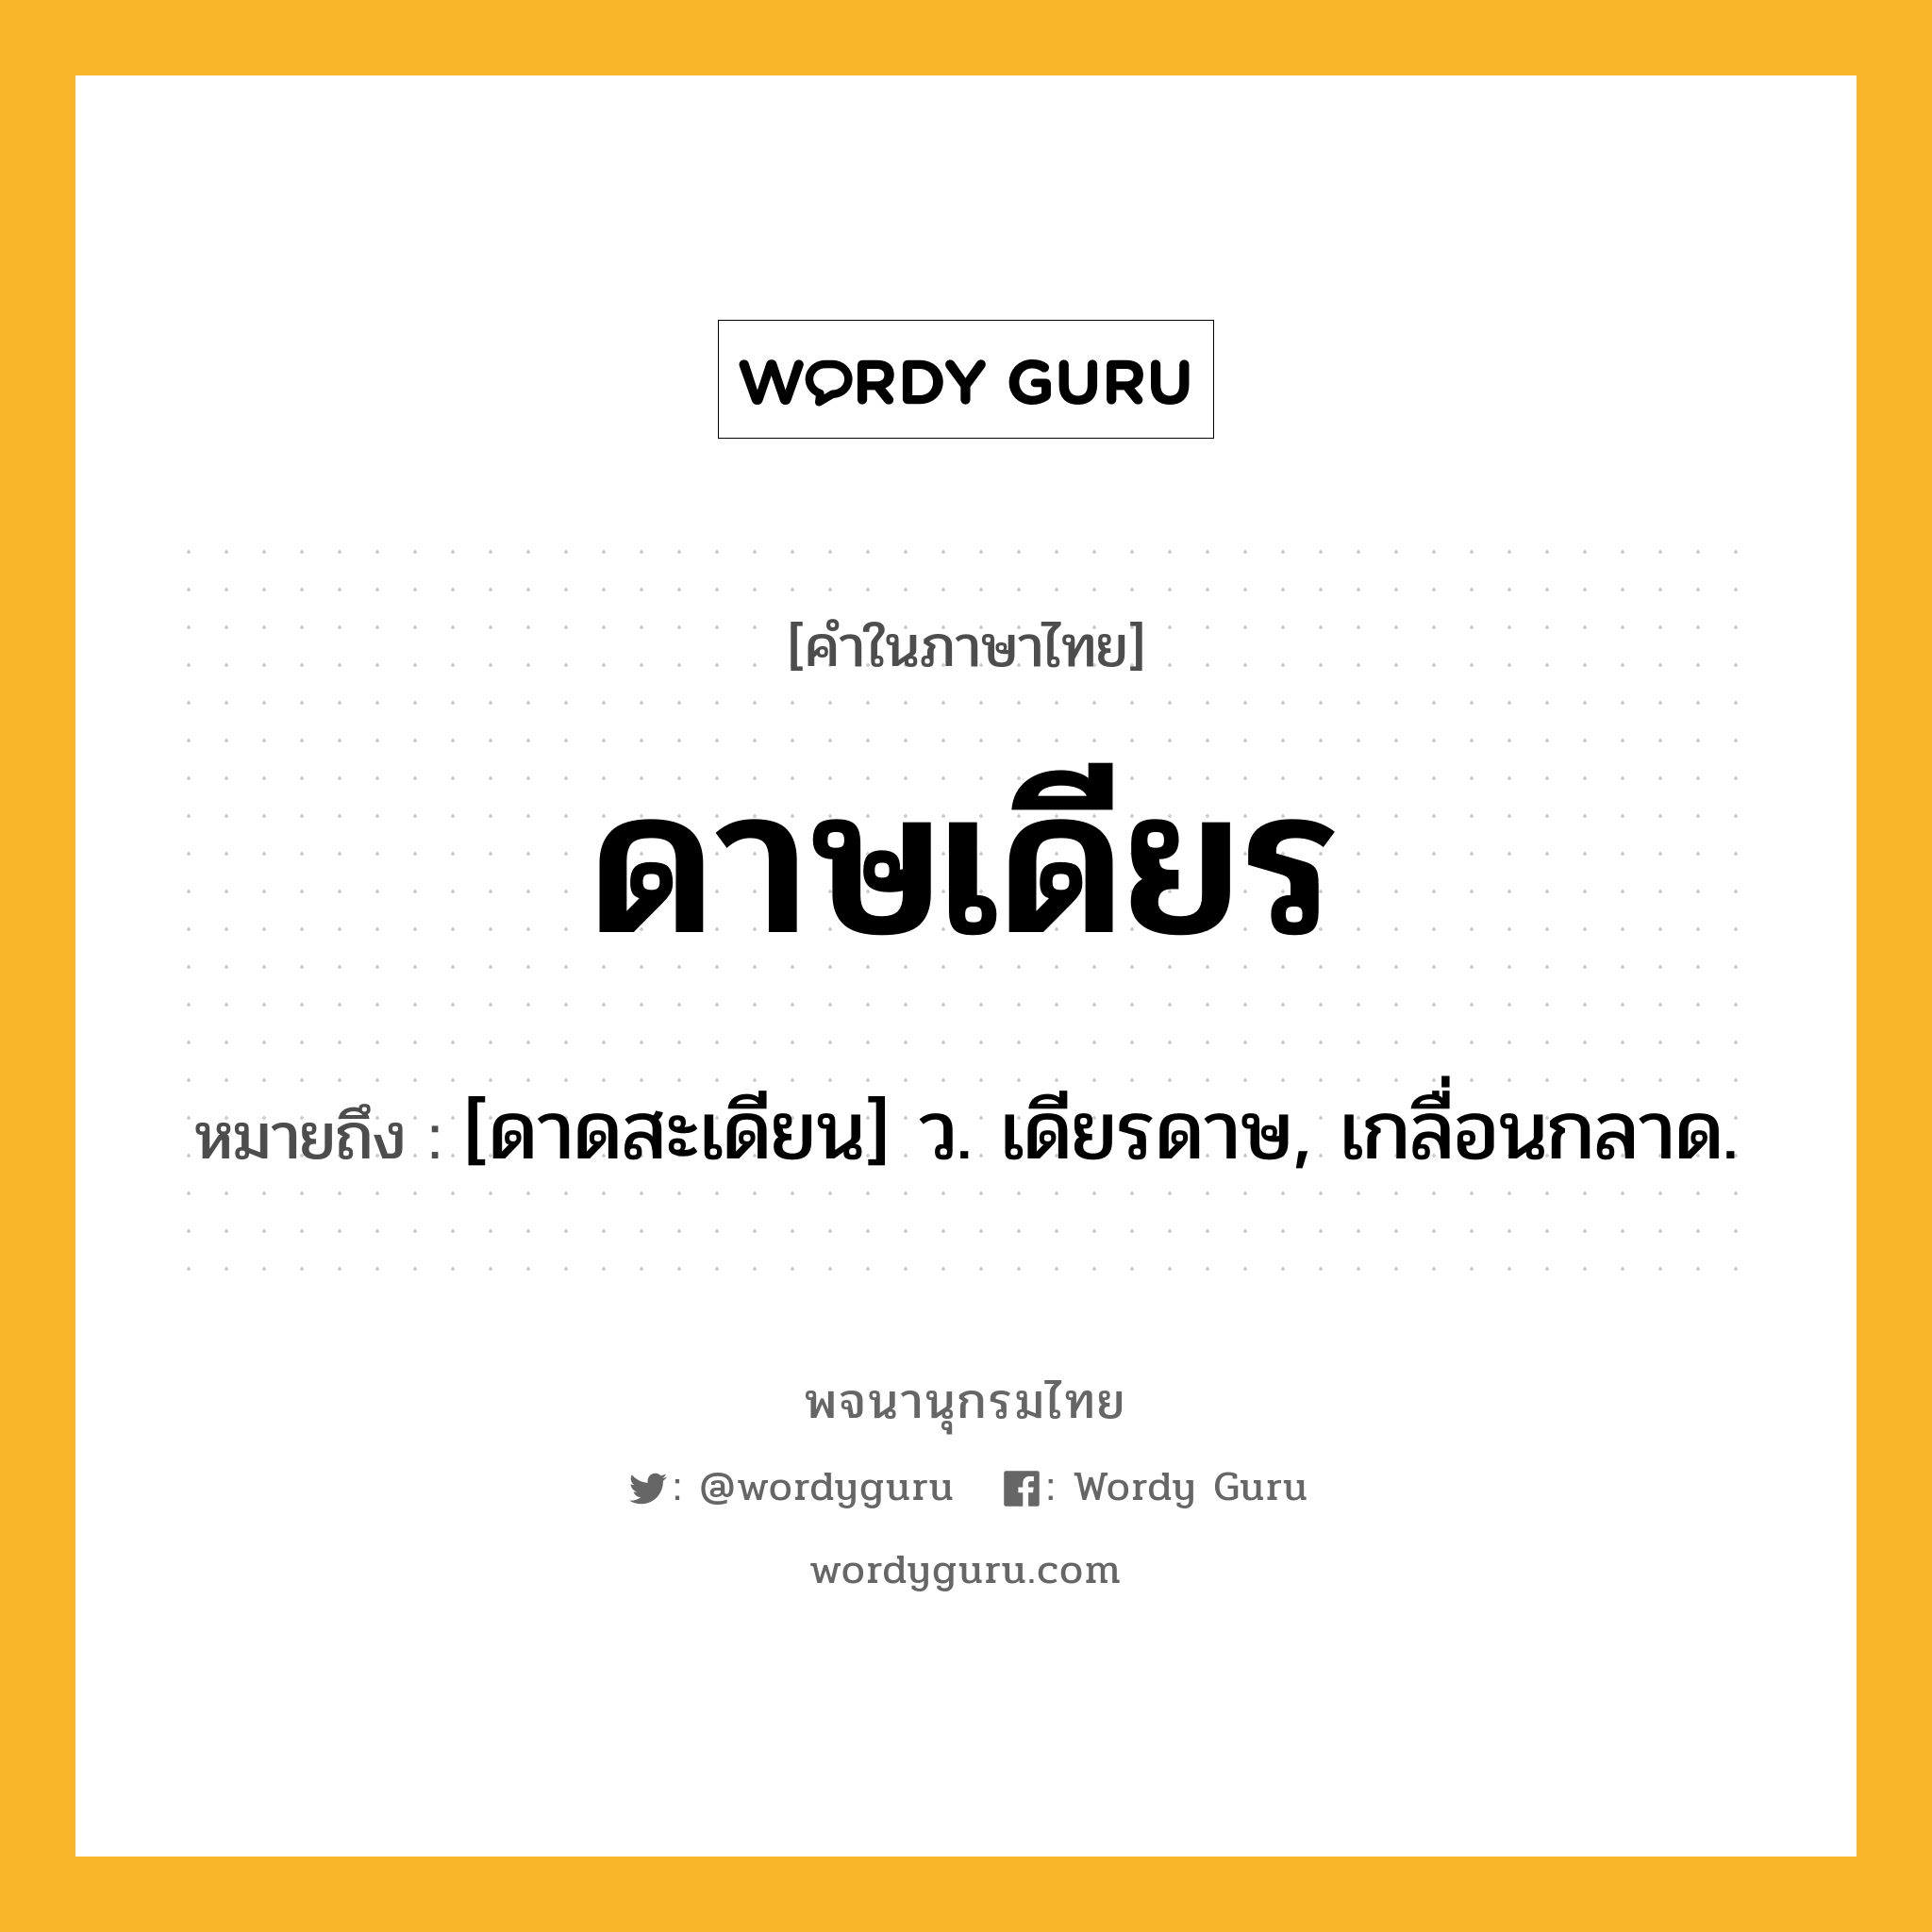 ดาษเดียร ความหมาย หมายถึงอะไร?, คำในภาษาไทย ดาษเดียร หมายถึง [ดาดสะเดียน] ว. เดียรดาษ, เกลื่อนกลาด.